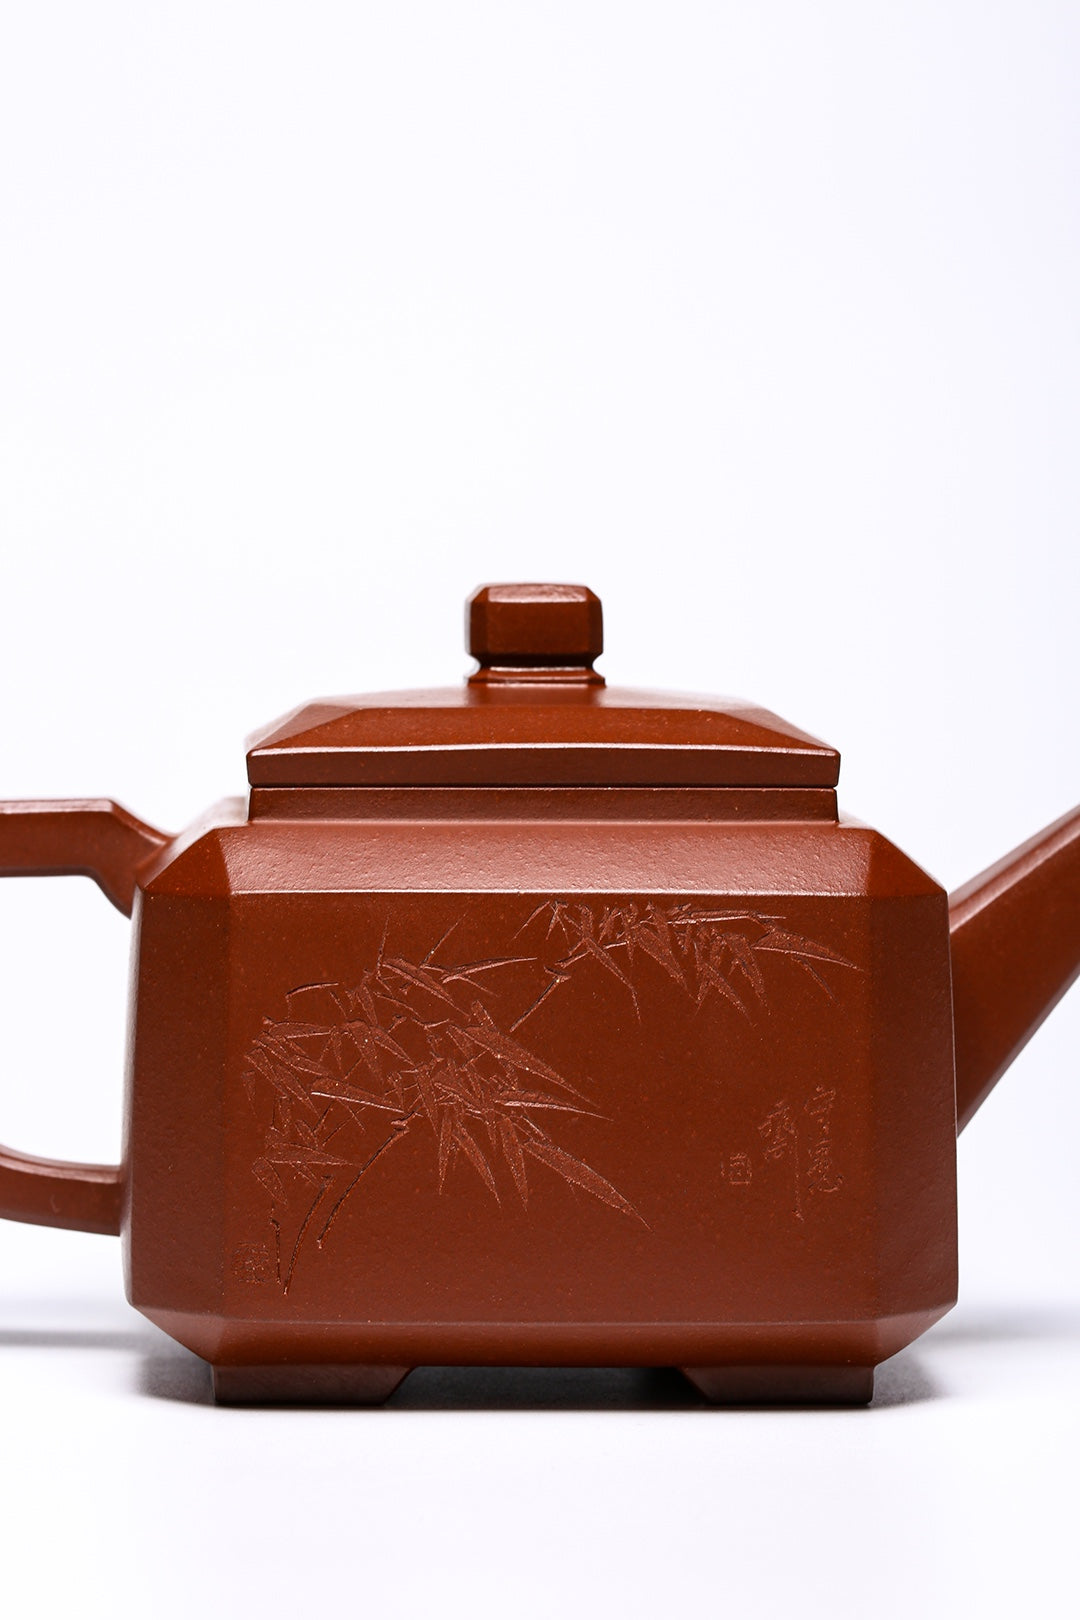 [Collection grade] Original ore bottom slot Qing Sifang Zisha teapot